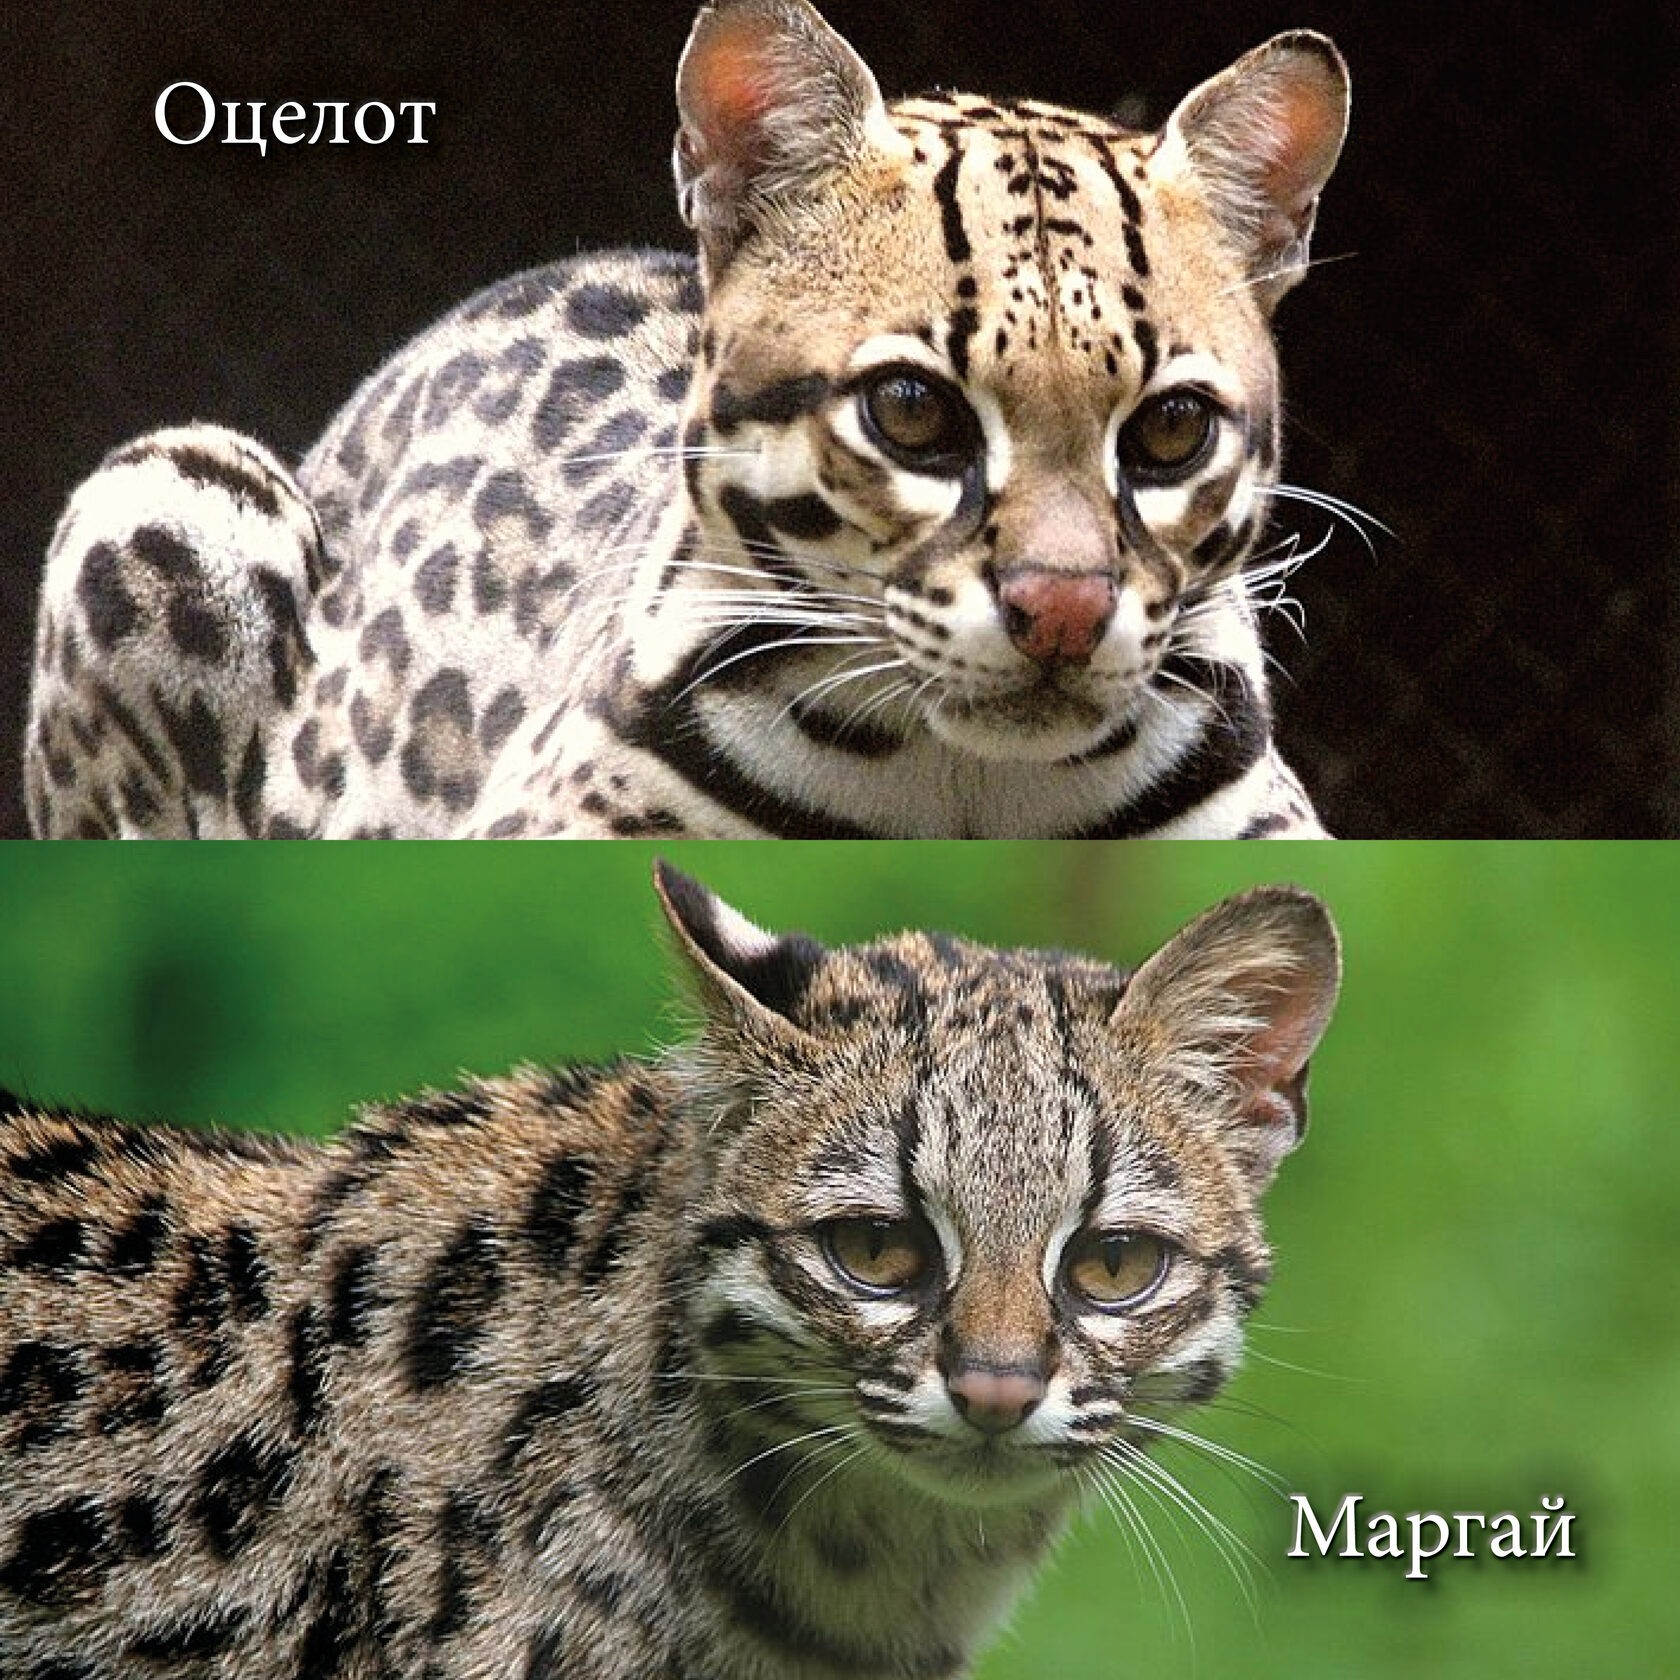 Оцелот (Leopardus pardalis) и Маргай (Длиннохвостая кошка, Leopardus wiedii).